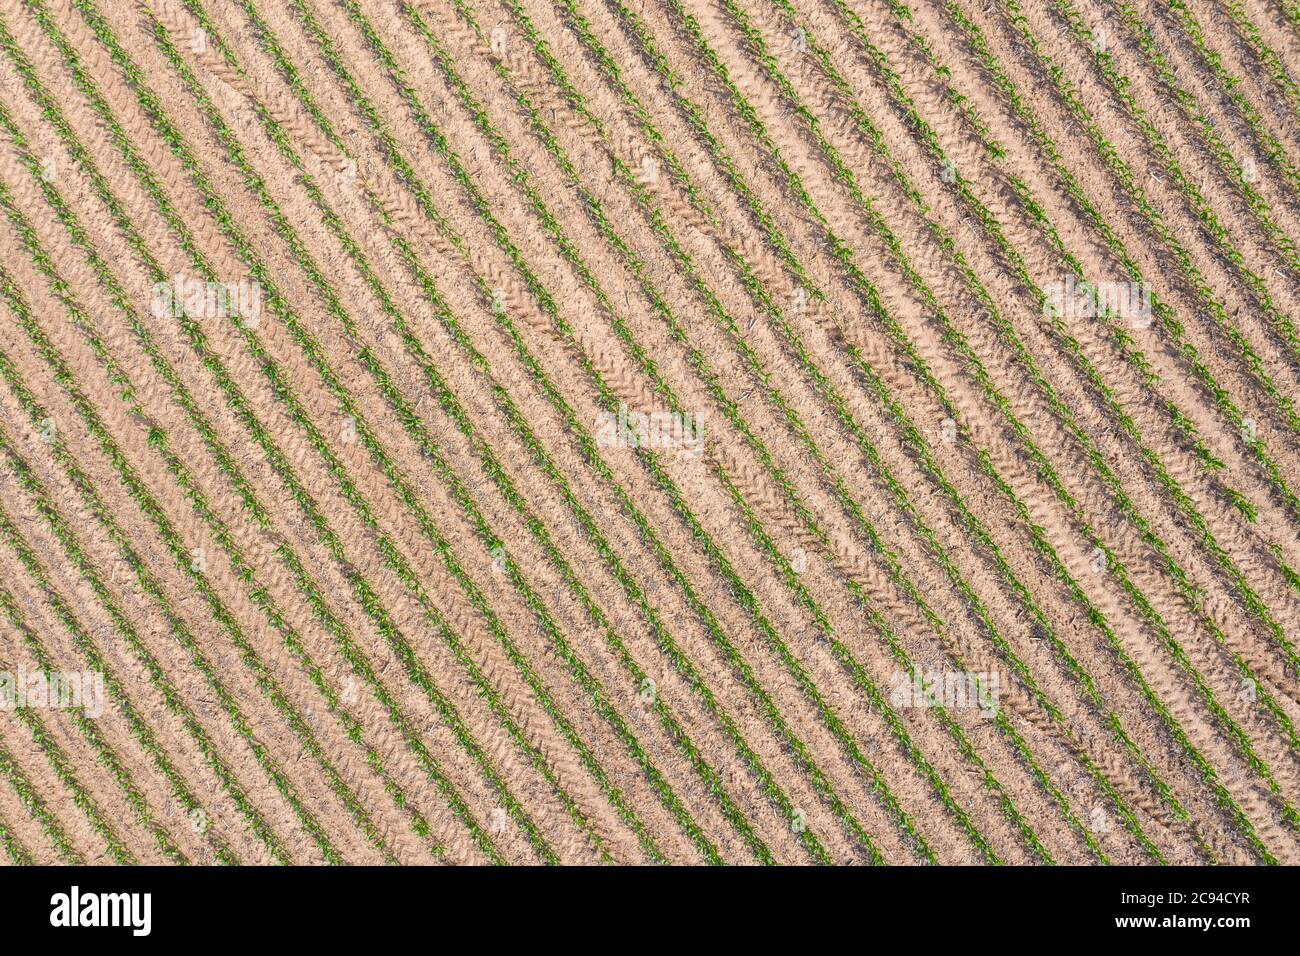 Un'immagine drone che si affaccia su un raccolto di mais in crescita di recente mostra una classica scena di terreni agricoli tipica del Midwest. Foto Stock